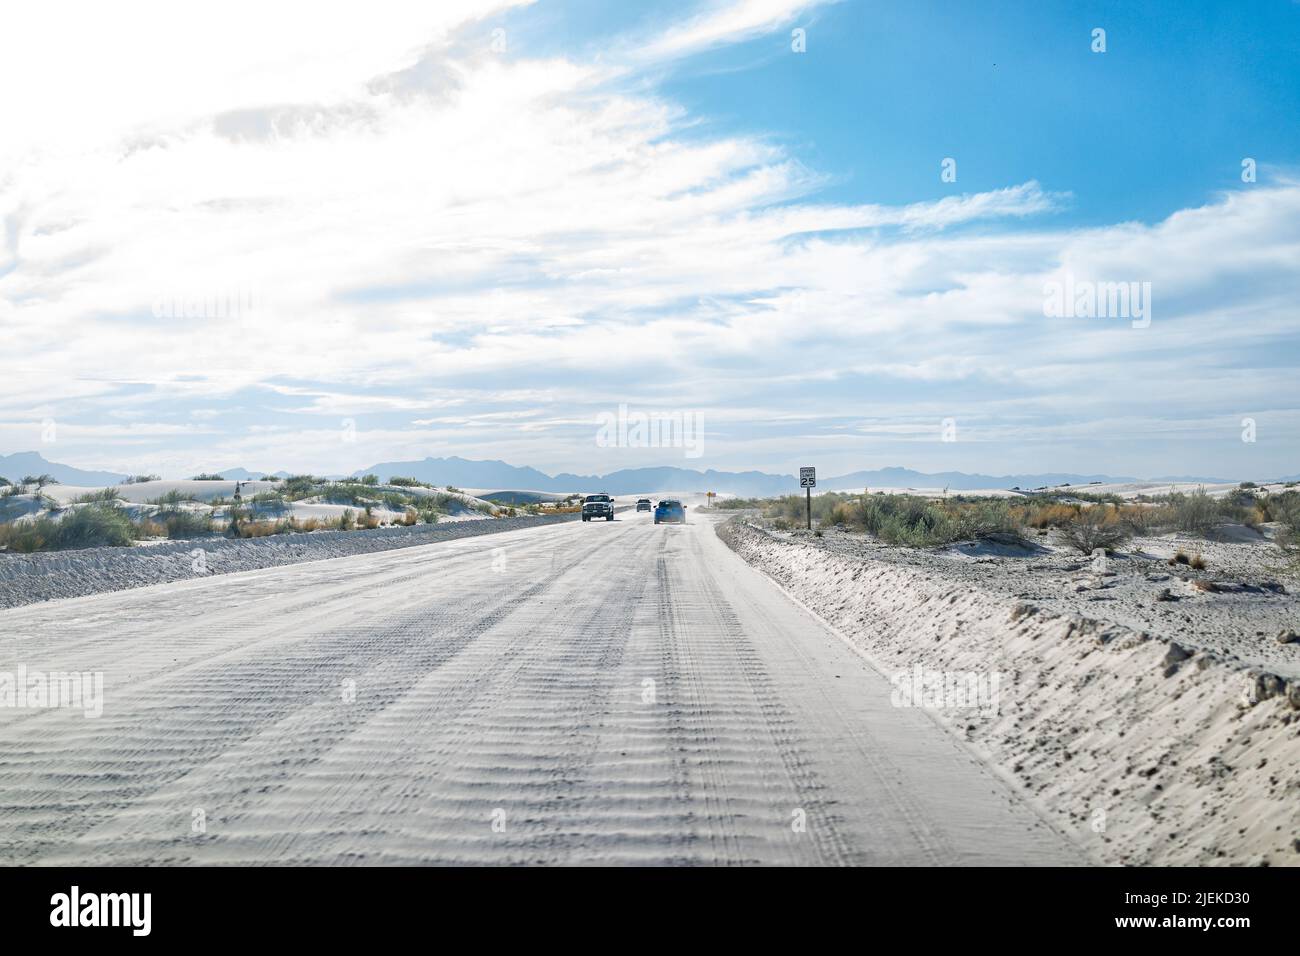 White Sands National Monument Dunes strada e auto in New Mexico guida per le aree di parcheggio per sentieri escursionistici con cielo blu e nuvole Foto Stock